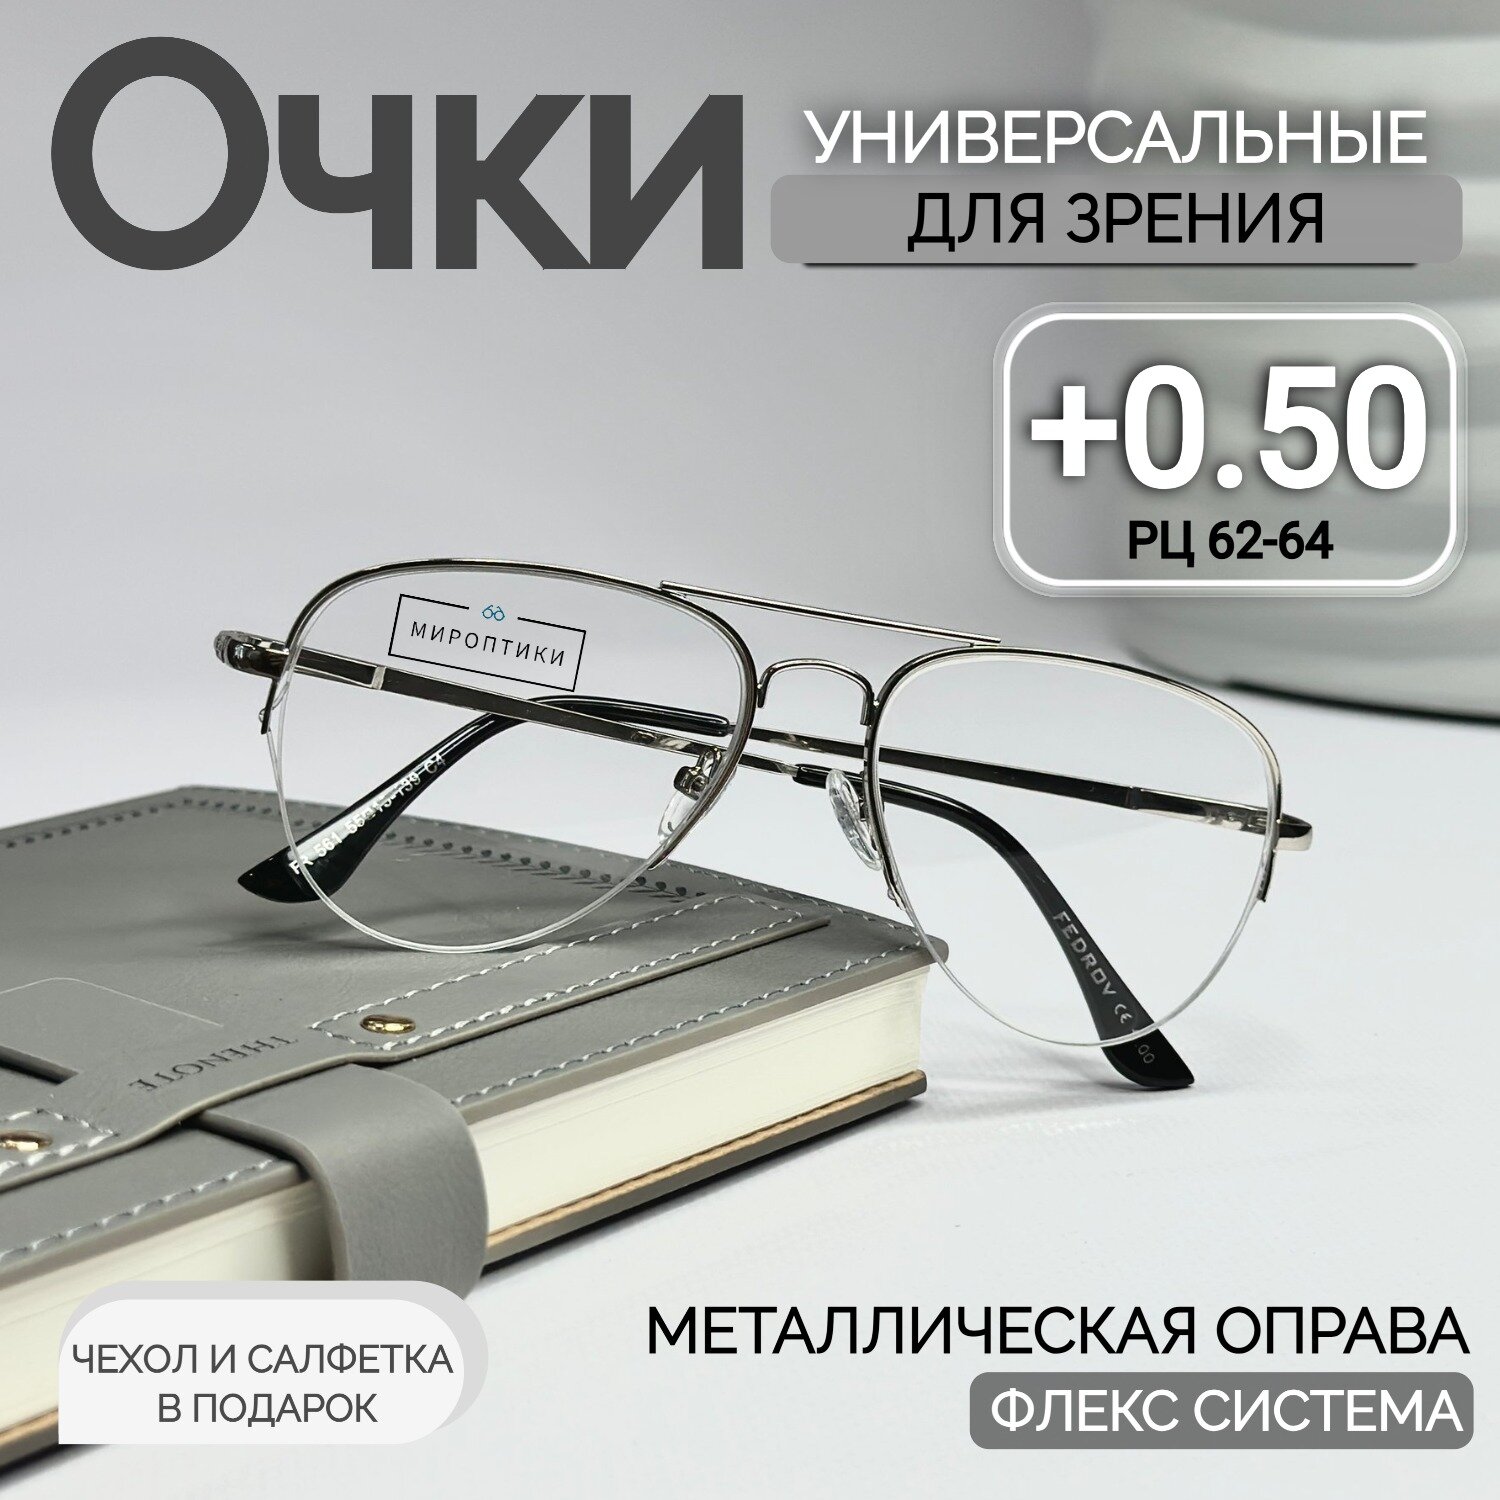 Очки для зрения Fedrov 561 серебро, авиаторы, для чтения с диоптриями +0.50 (чехол и салфетка в подарок)